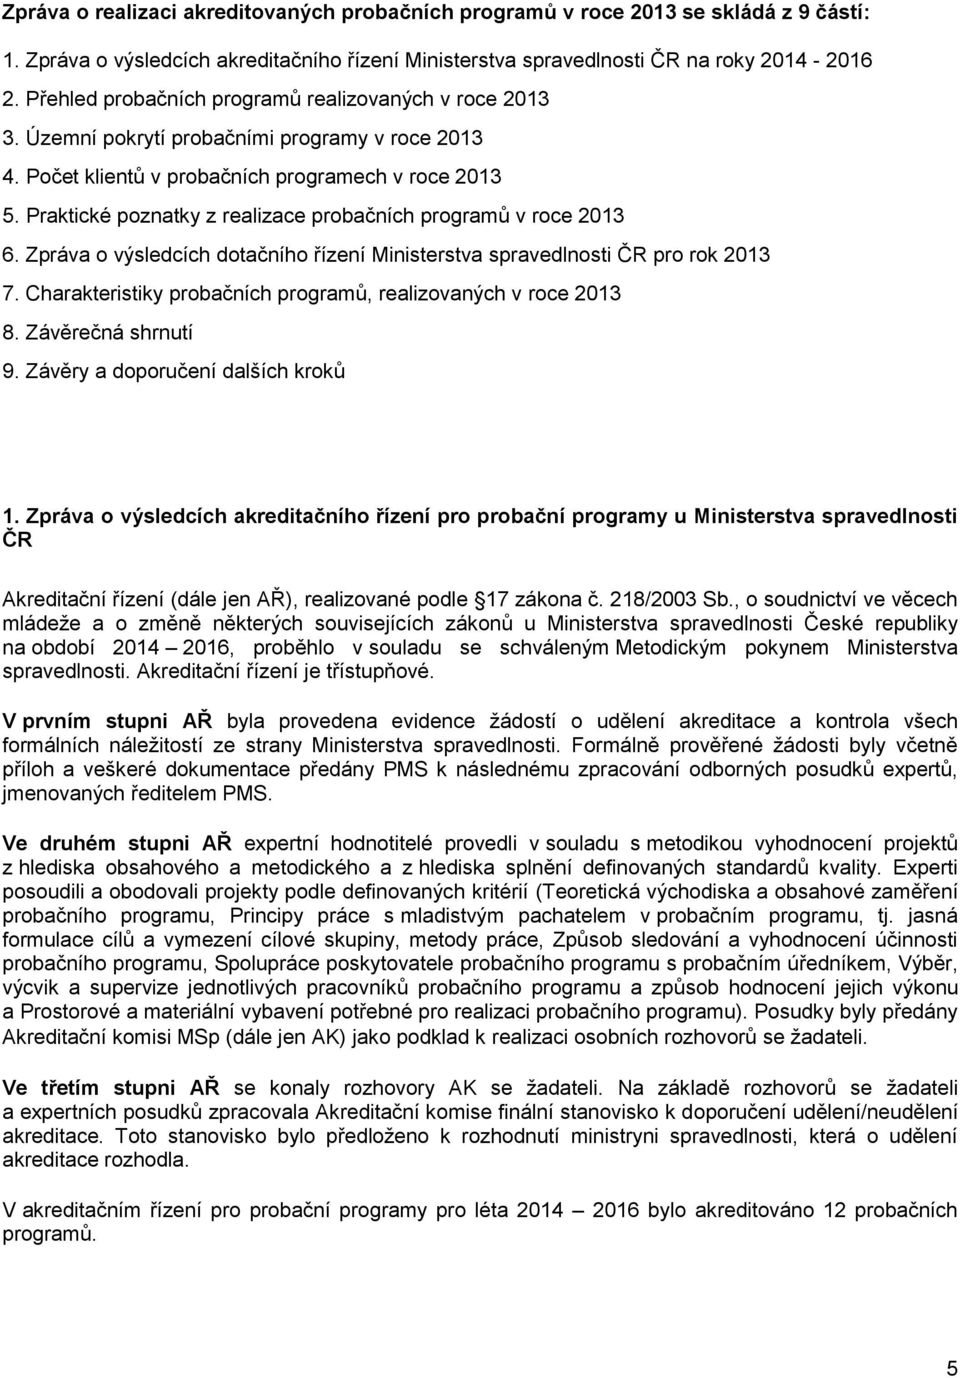 Praktické poznatky z realizace probačních programů v roce 2013 6. Zpráva o výsledcích dotačního řízení Ministerstva spravedlnosti ČR pro rok 2013 7.